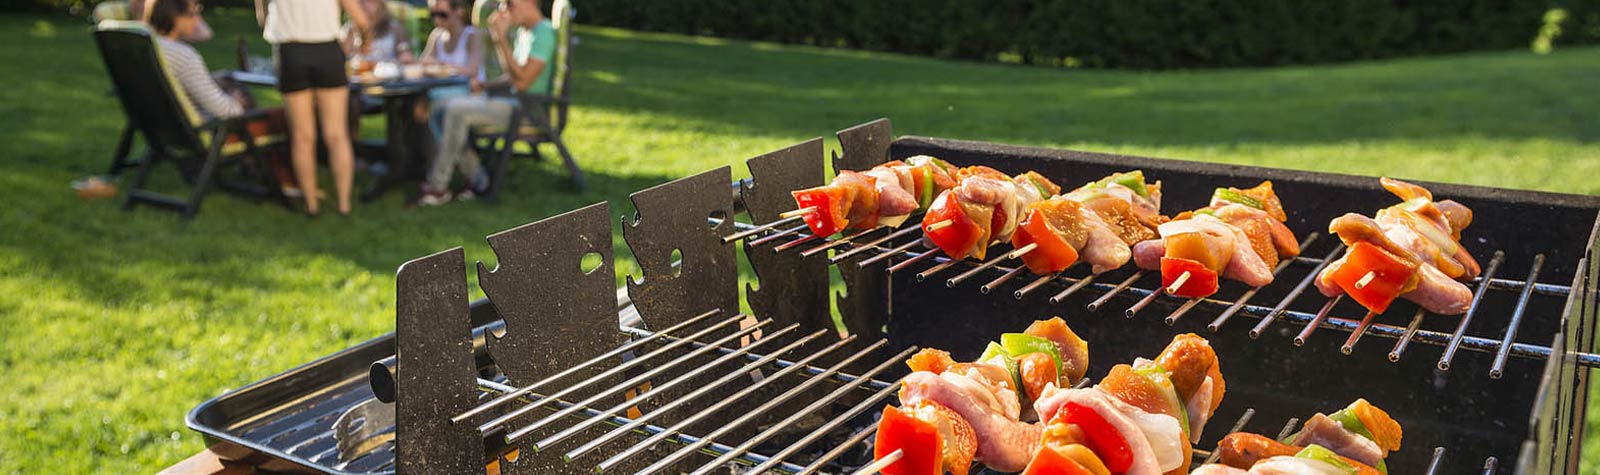 Les barbecues de l’été (trop de viande !)